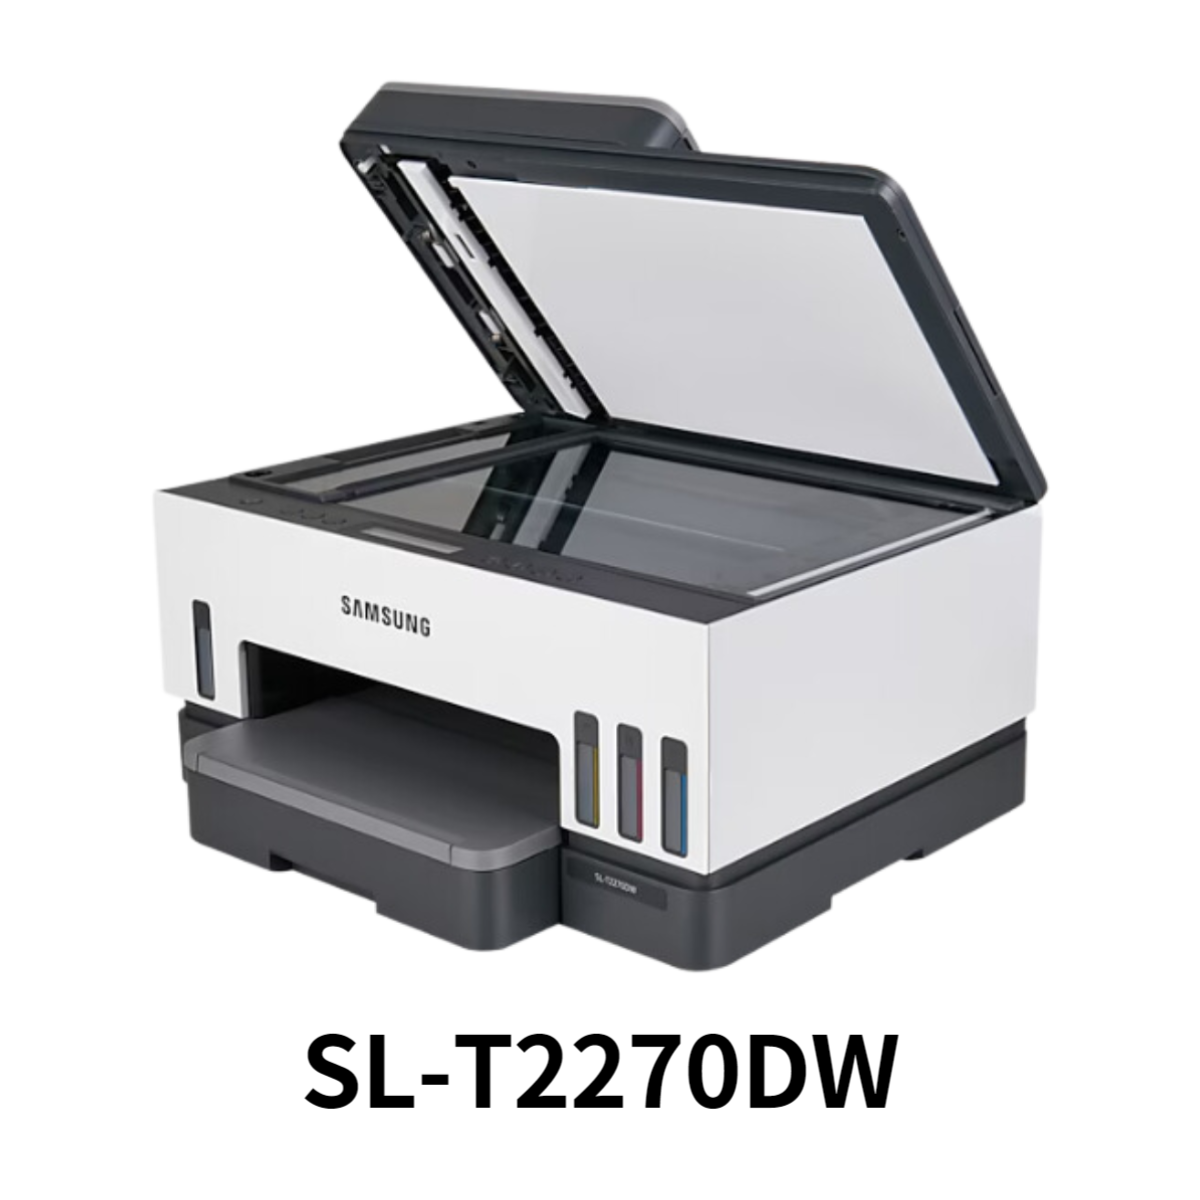 SL-T2270DW 프린터